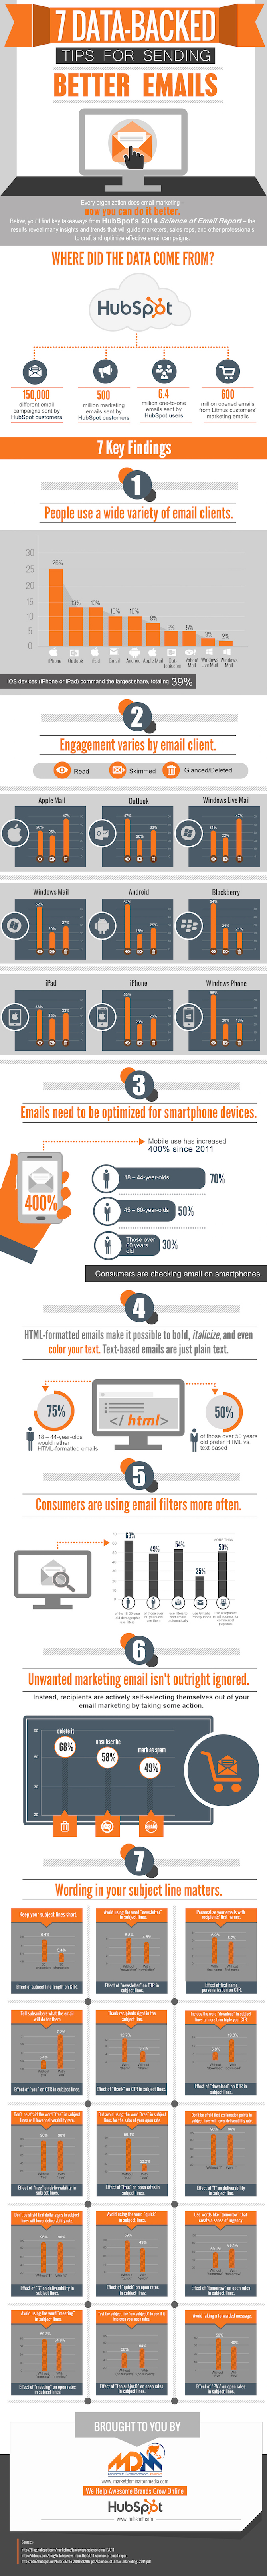 sending-better-emails-infographic_jpg